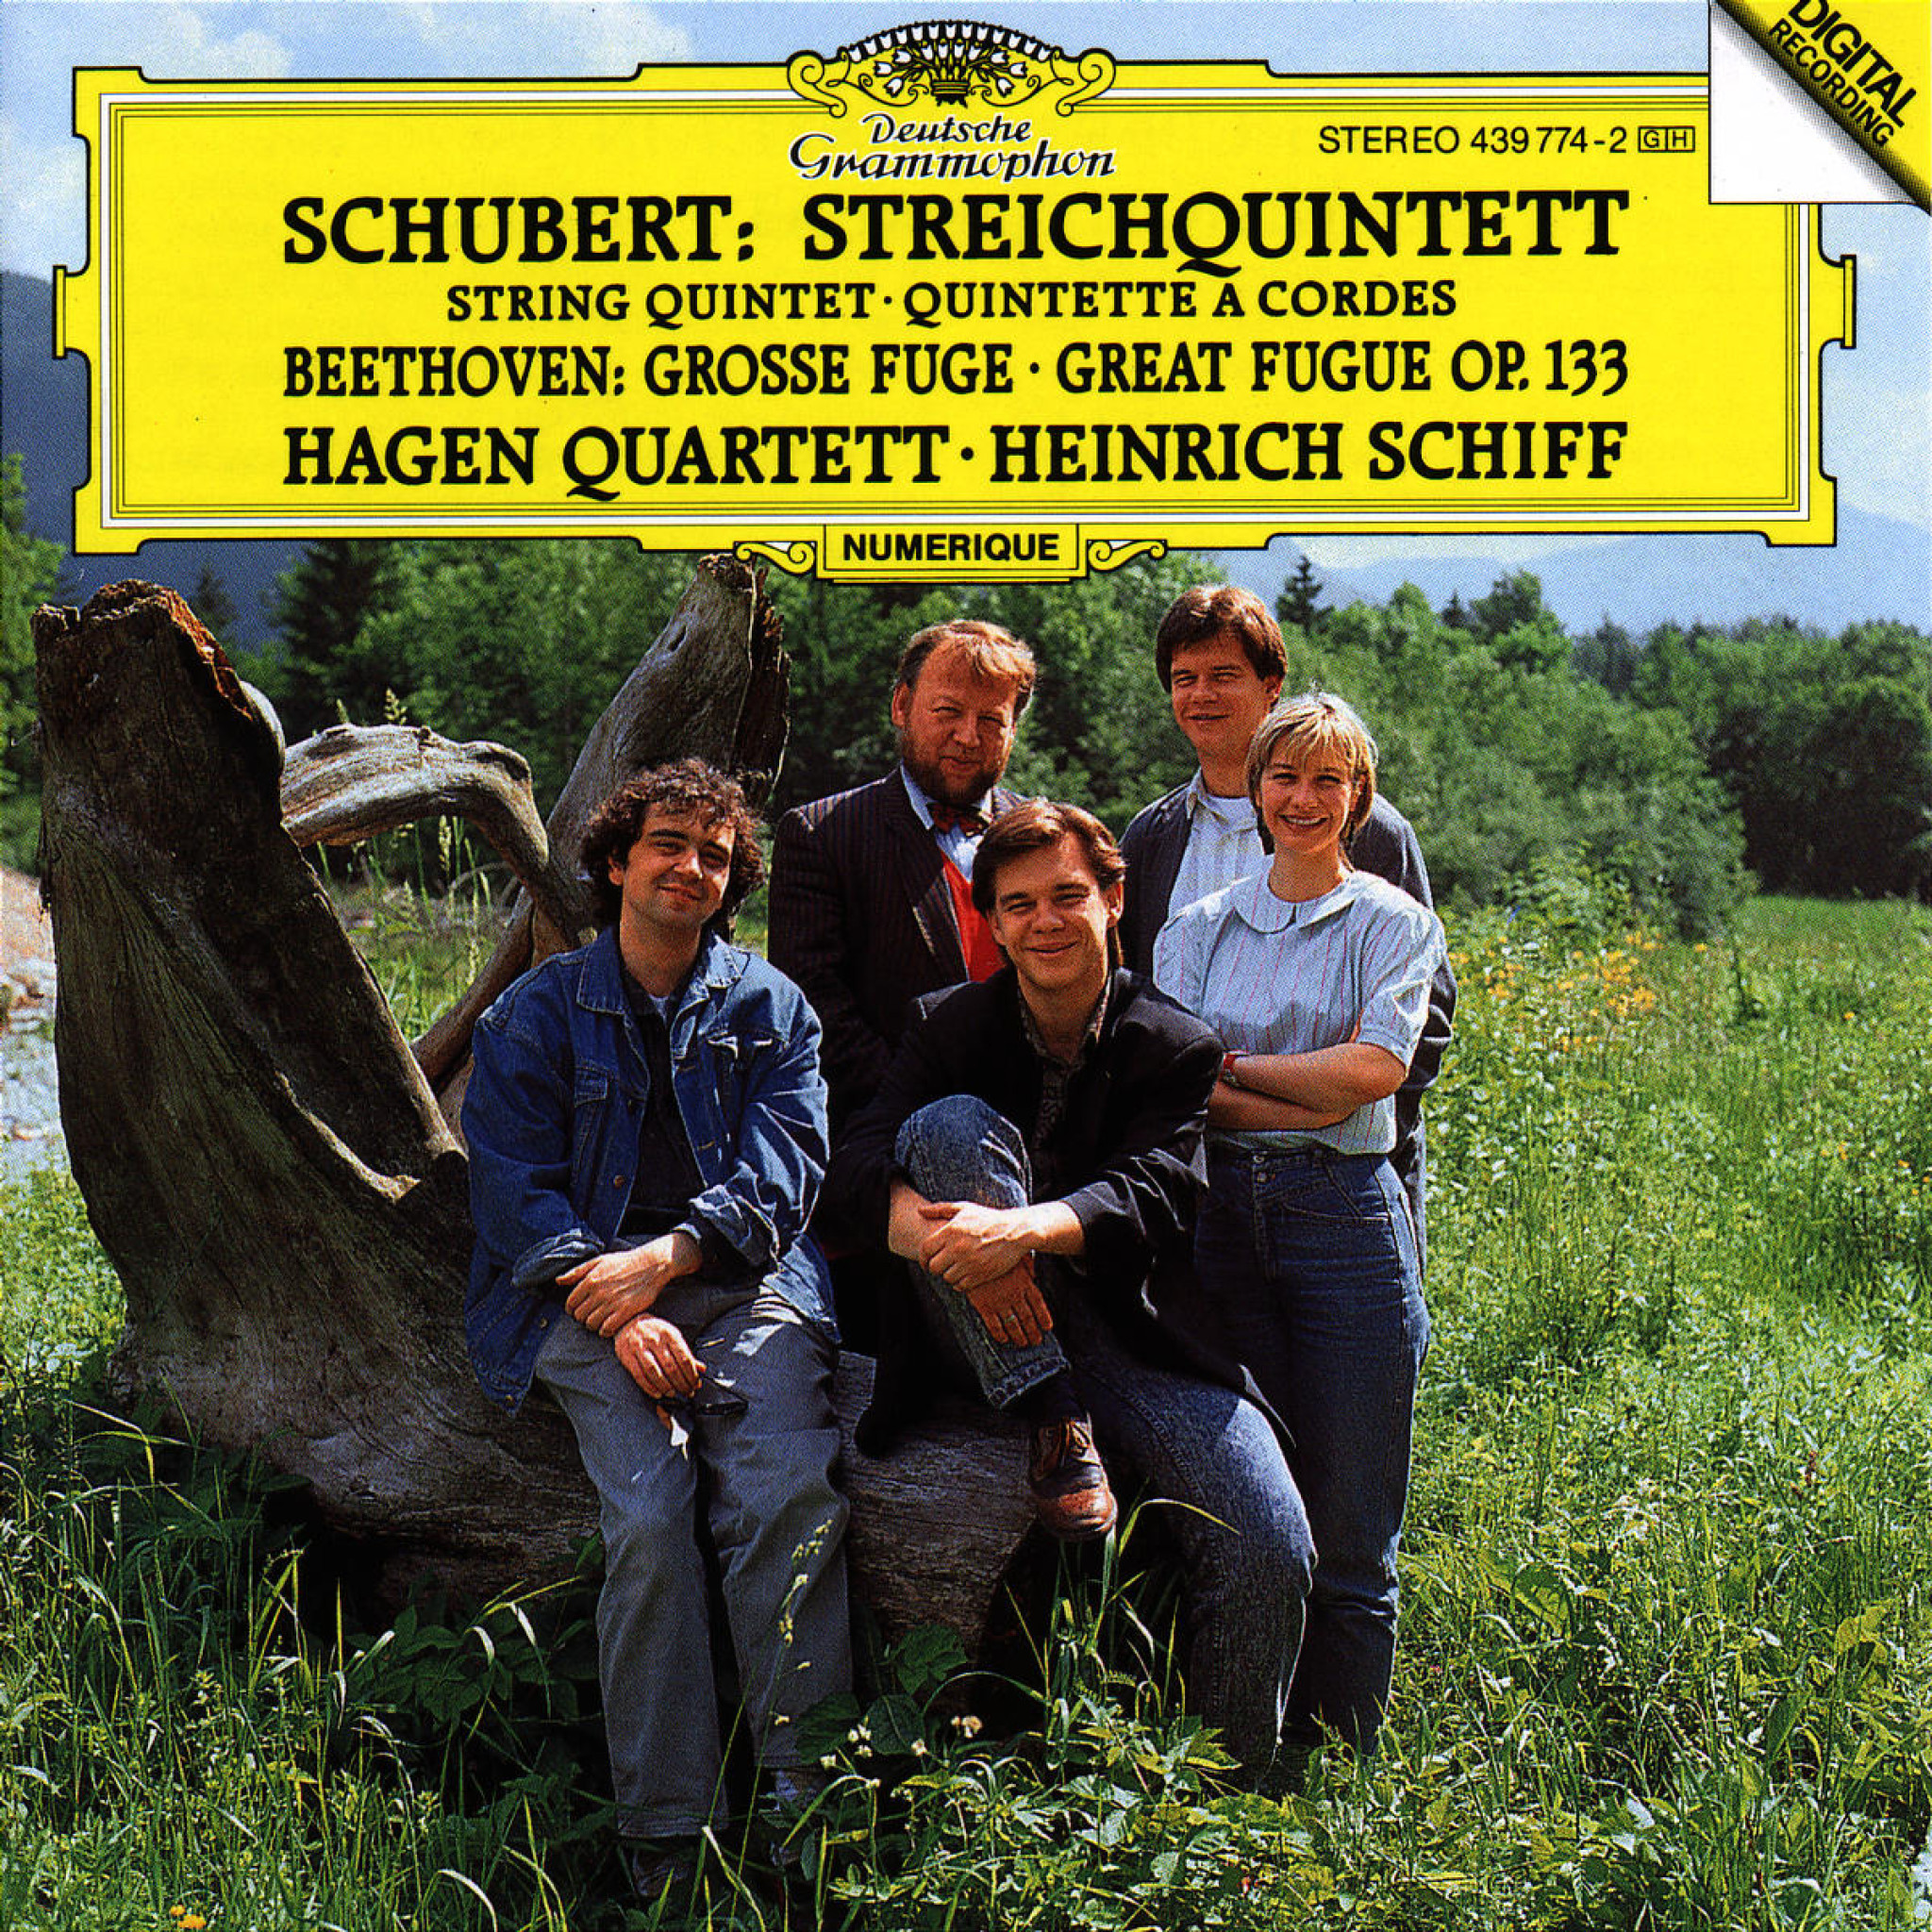 SCHUBERT String Quintet + BEETHOVEN Hagen Quartett